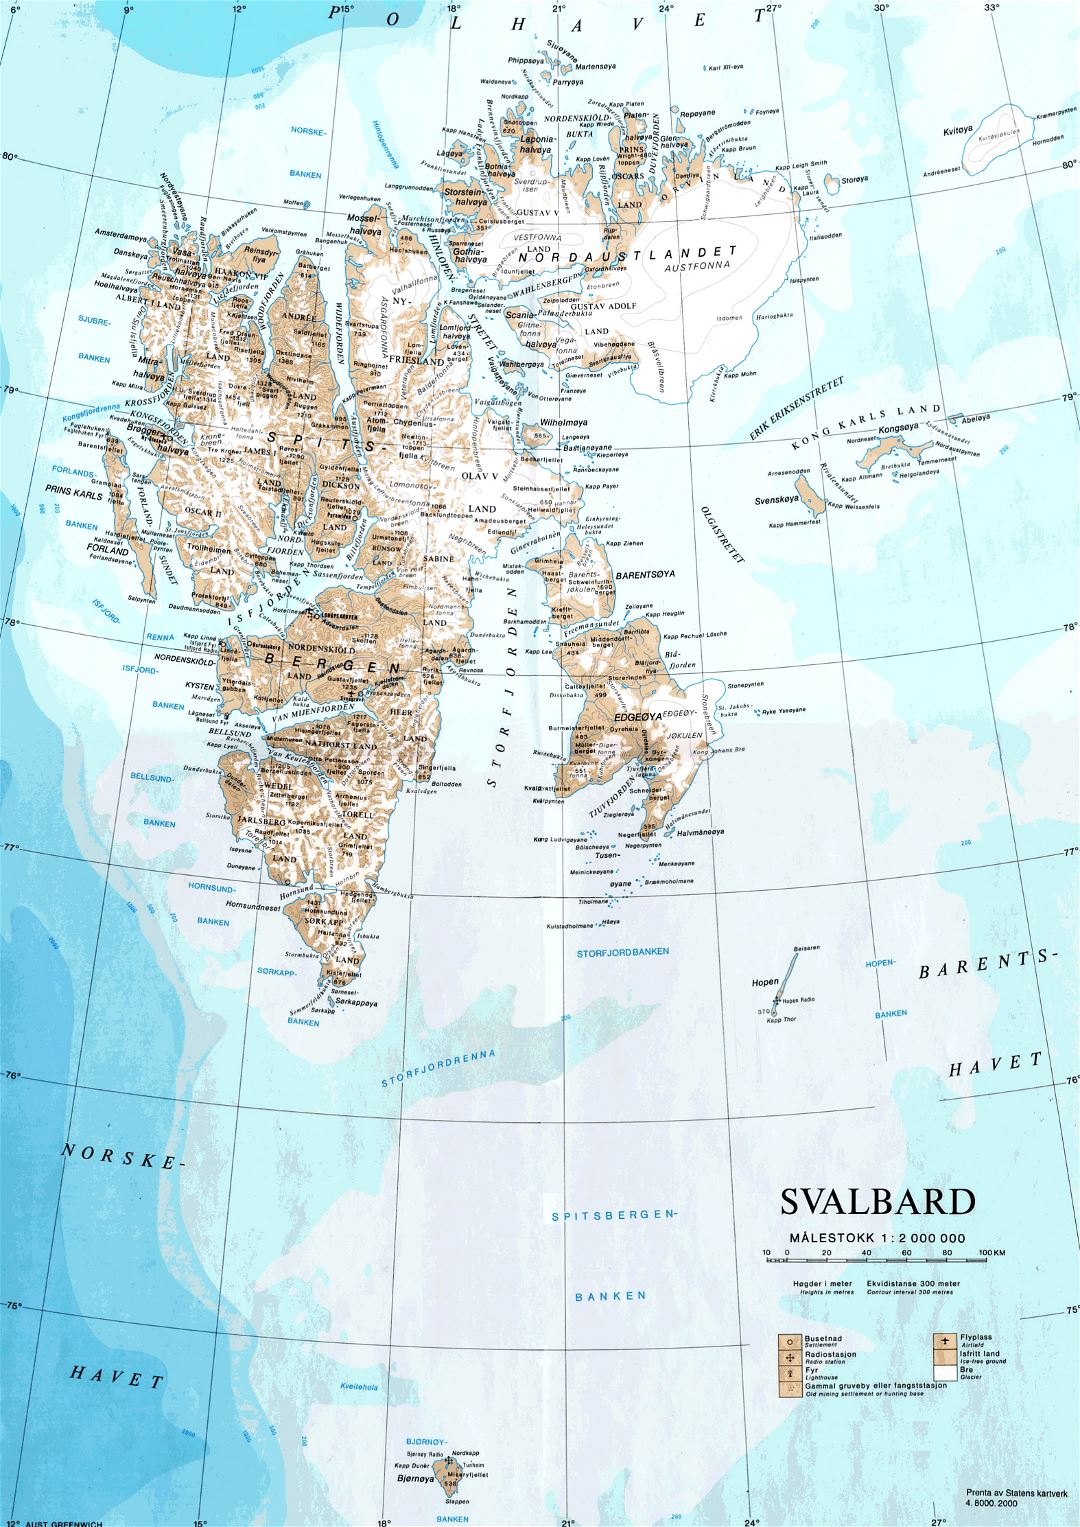 Grande detallado mapa de Svalbard con relieve y otras marcas